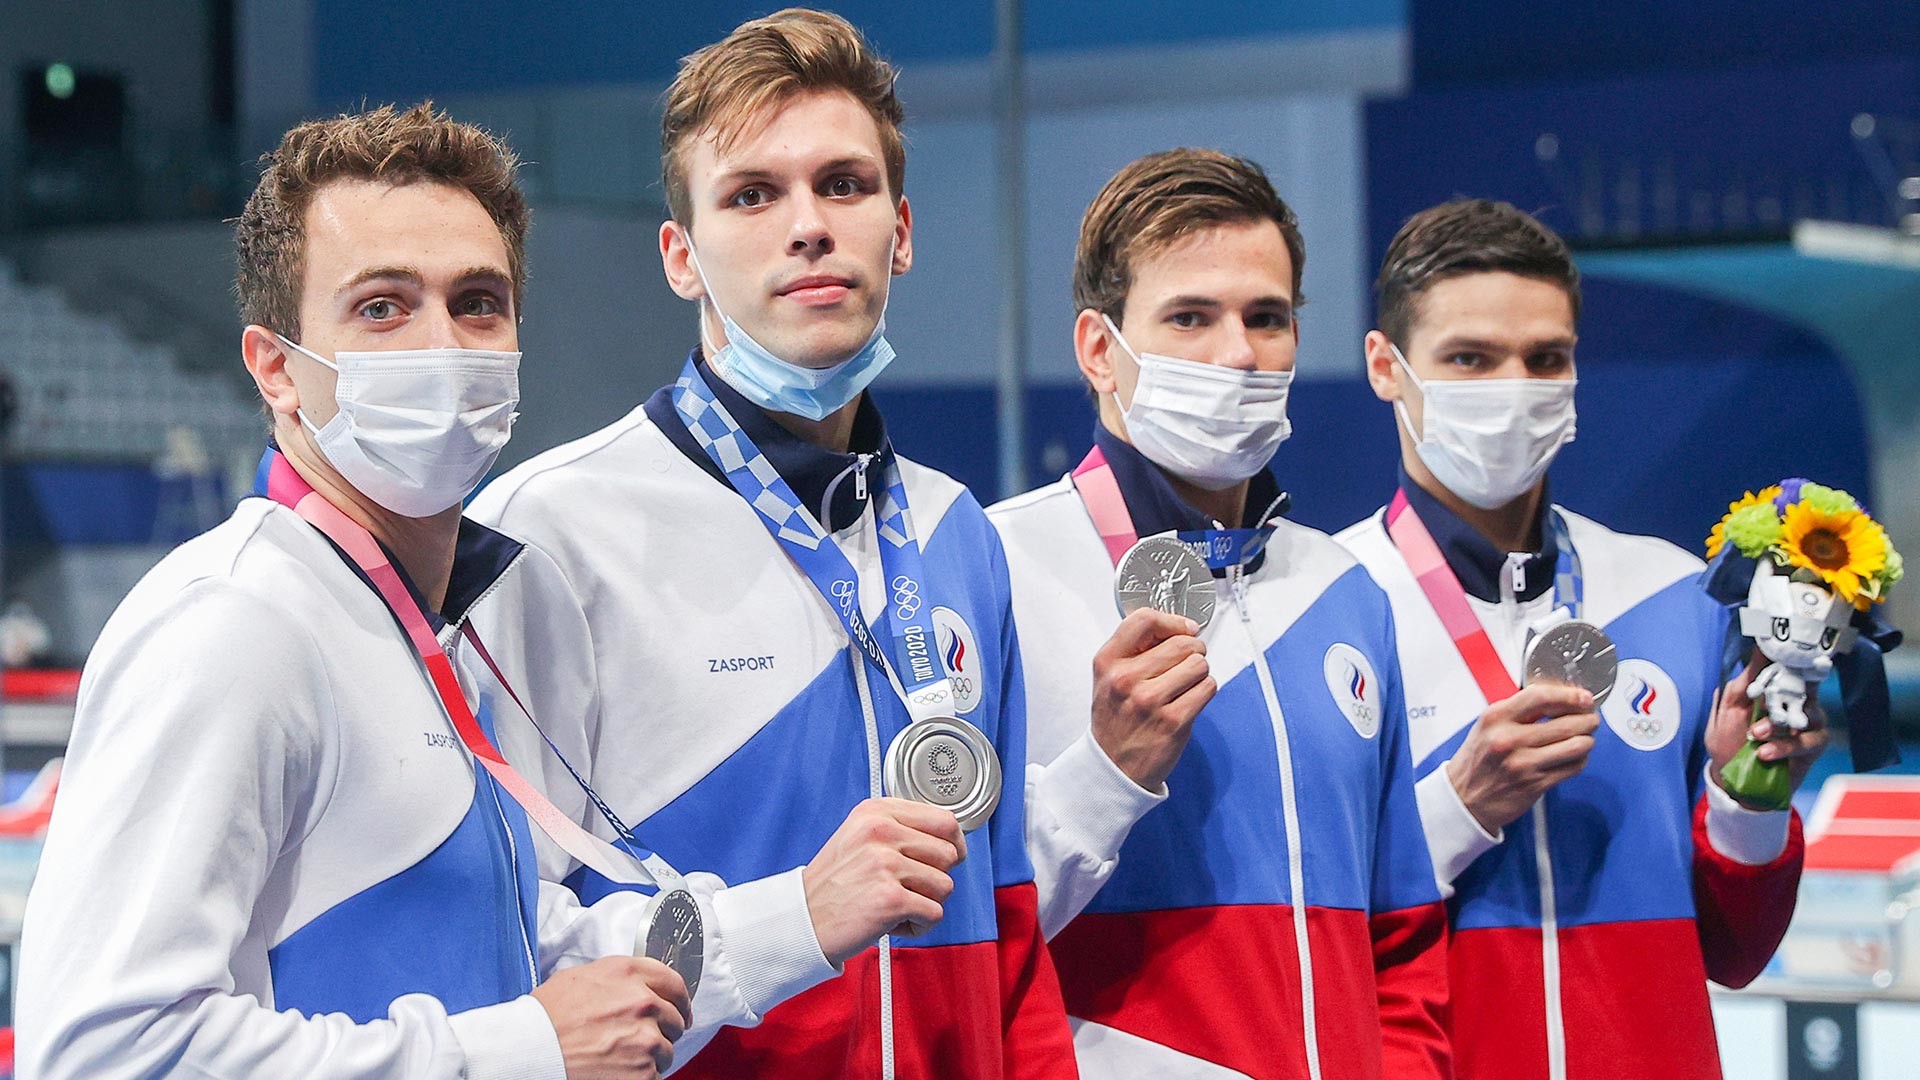 Центар за водене спортове. Пливање. Мушкарци. Штафета 4х200 м слободни стил. Церемонија доделе награда спортистима тима Руског олимпијског комитета који су освојили сребрне медаље.